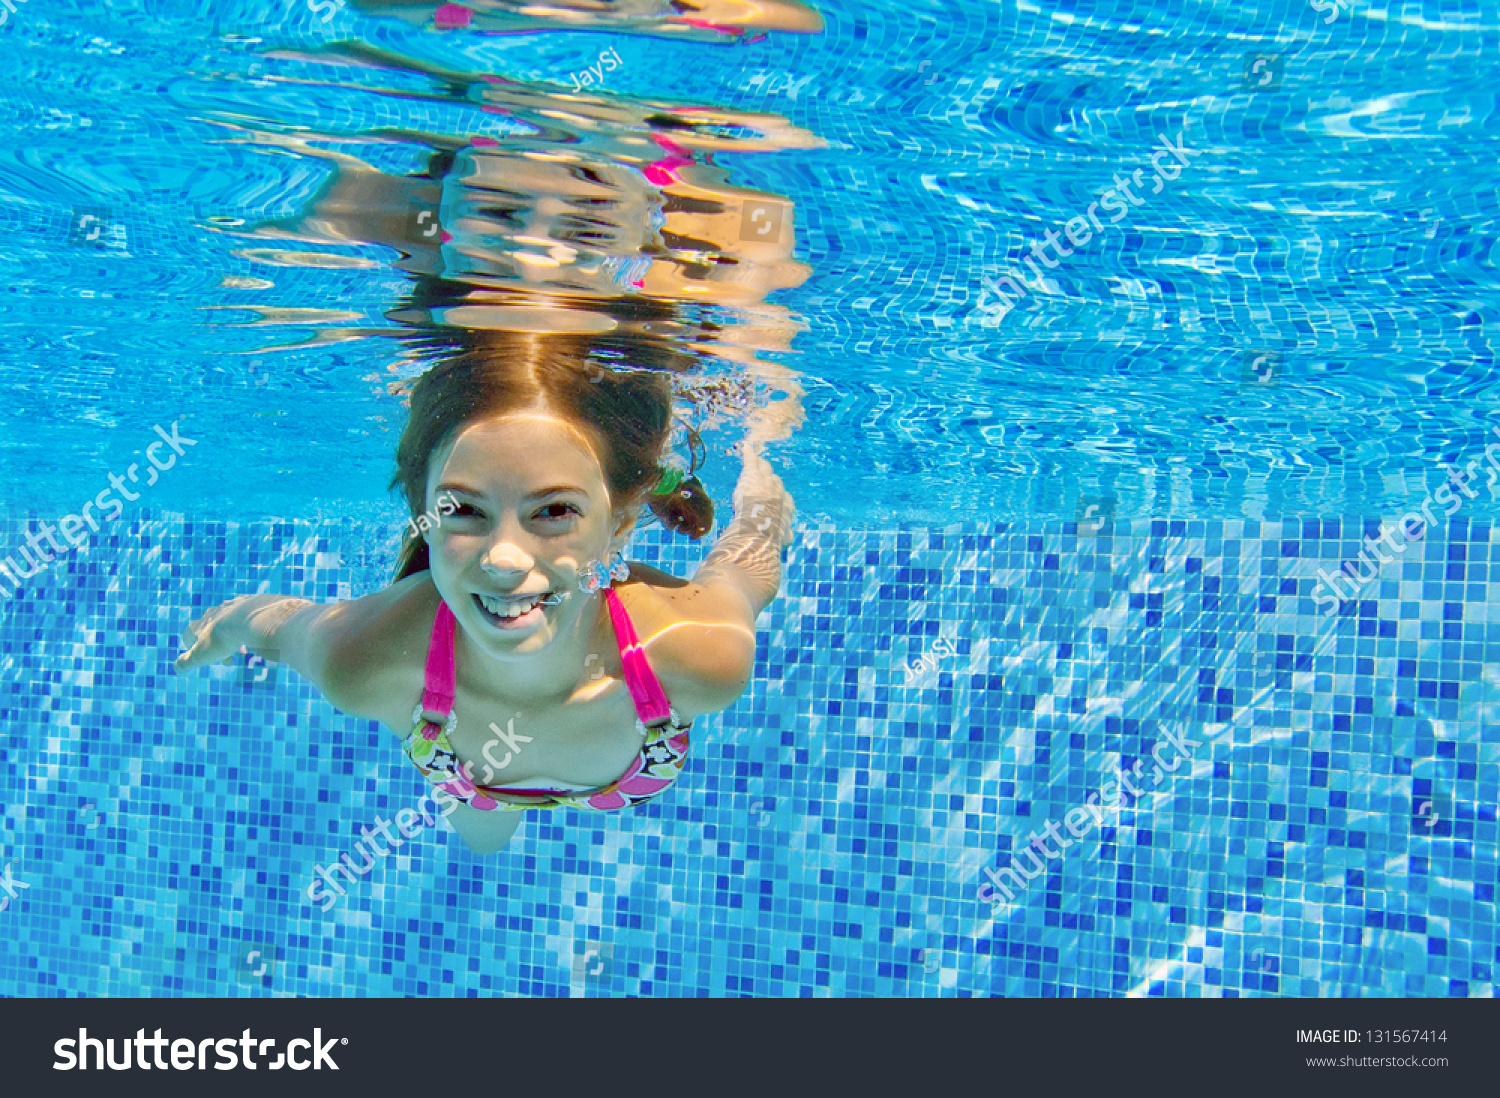 Pool jav swimming 